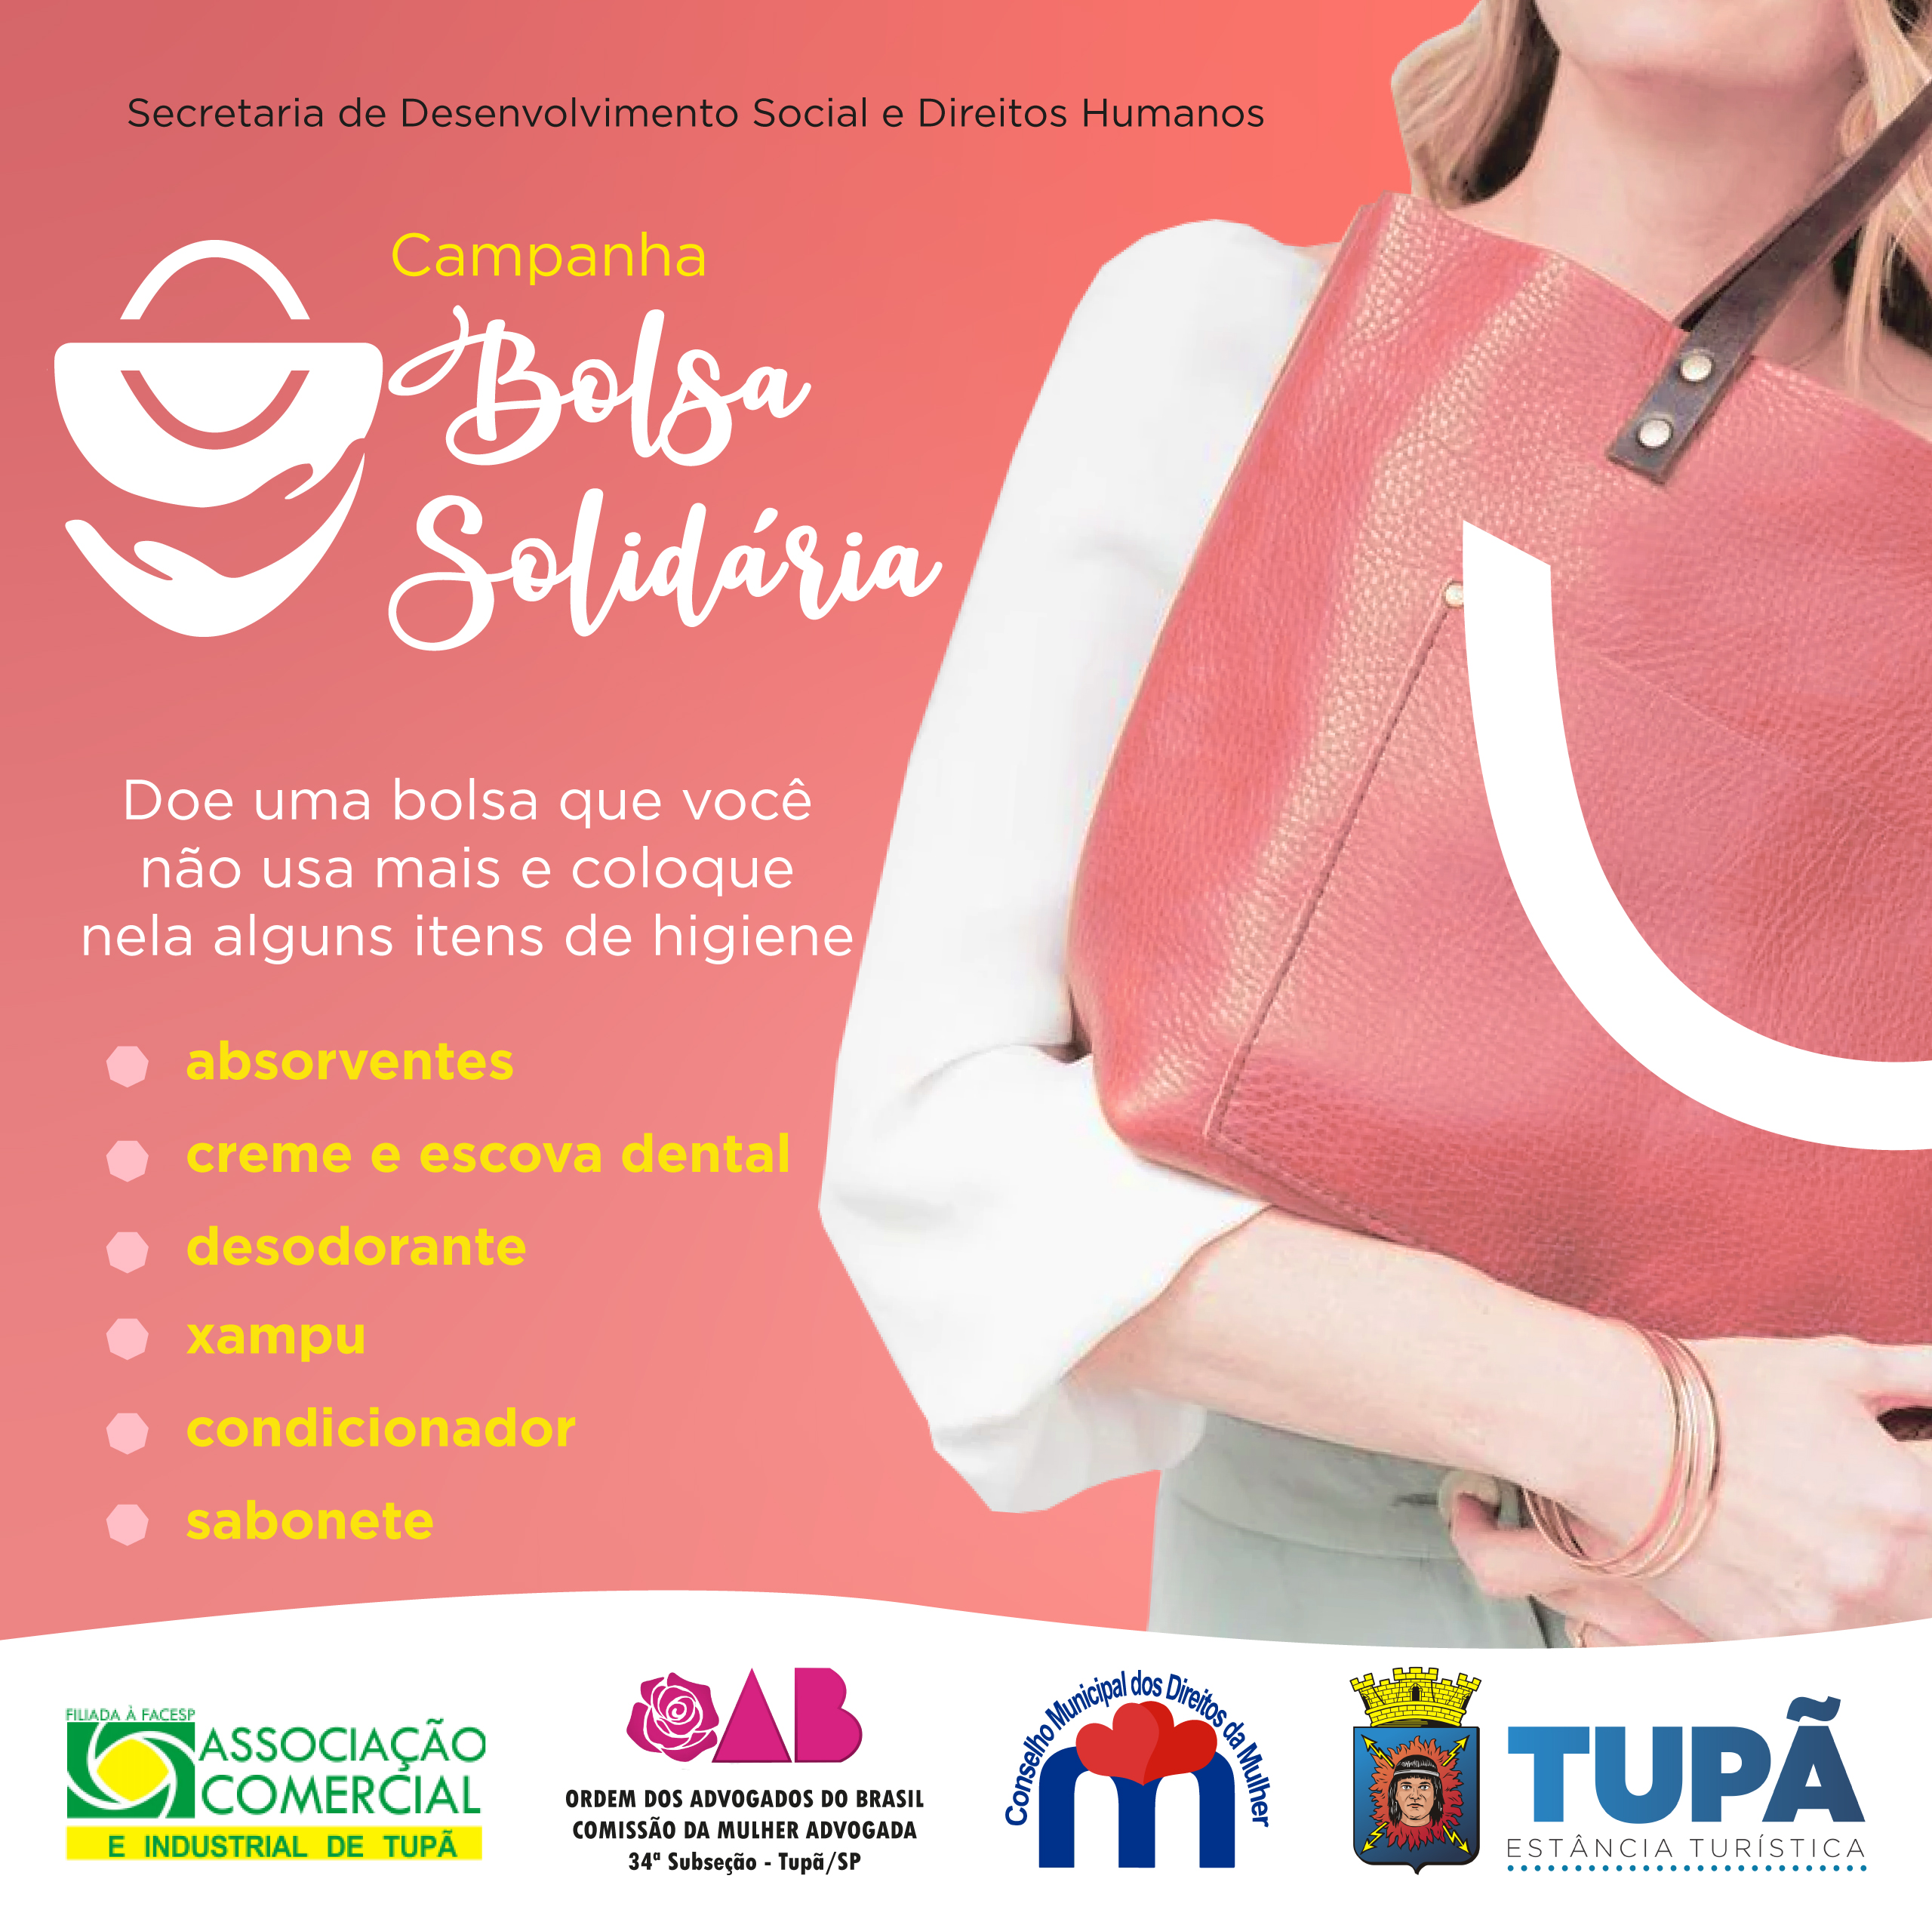 Mulheres podem doar bolsas sem uso e itens de higiene em campanha de Tupã